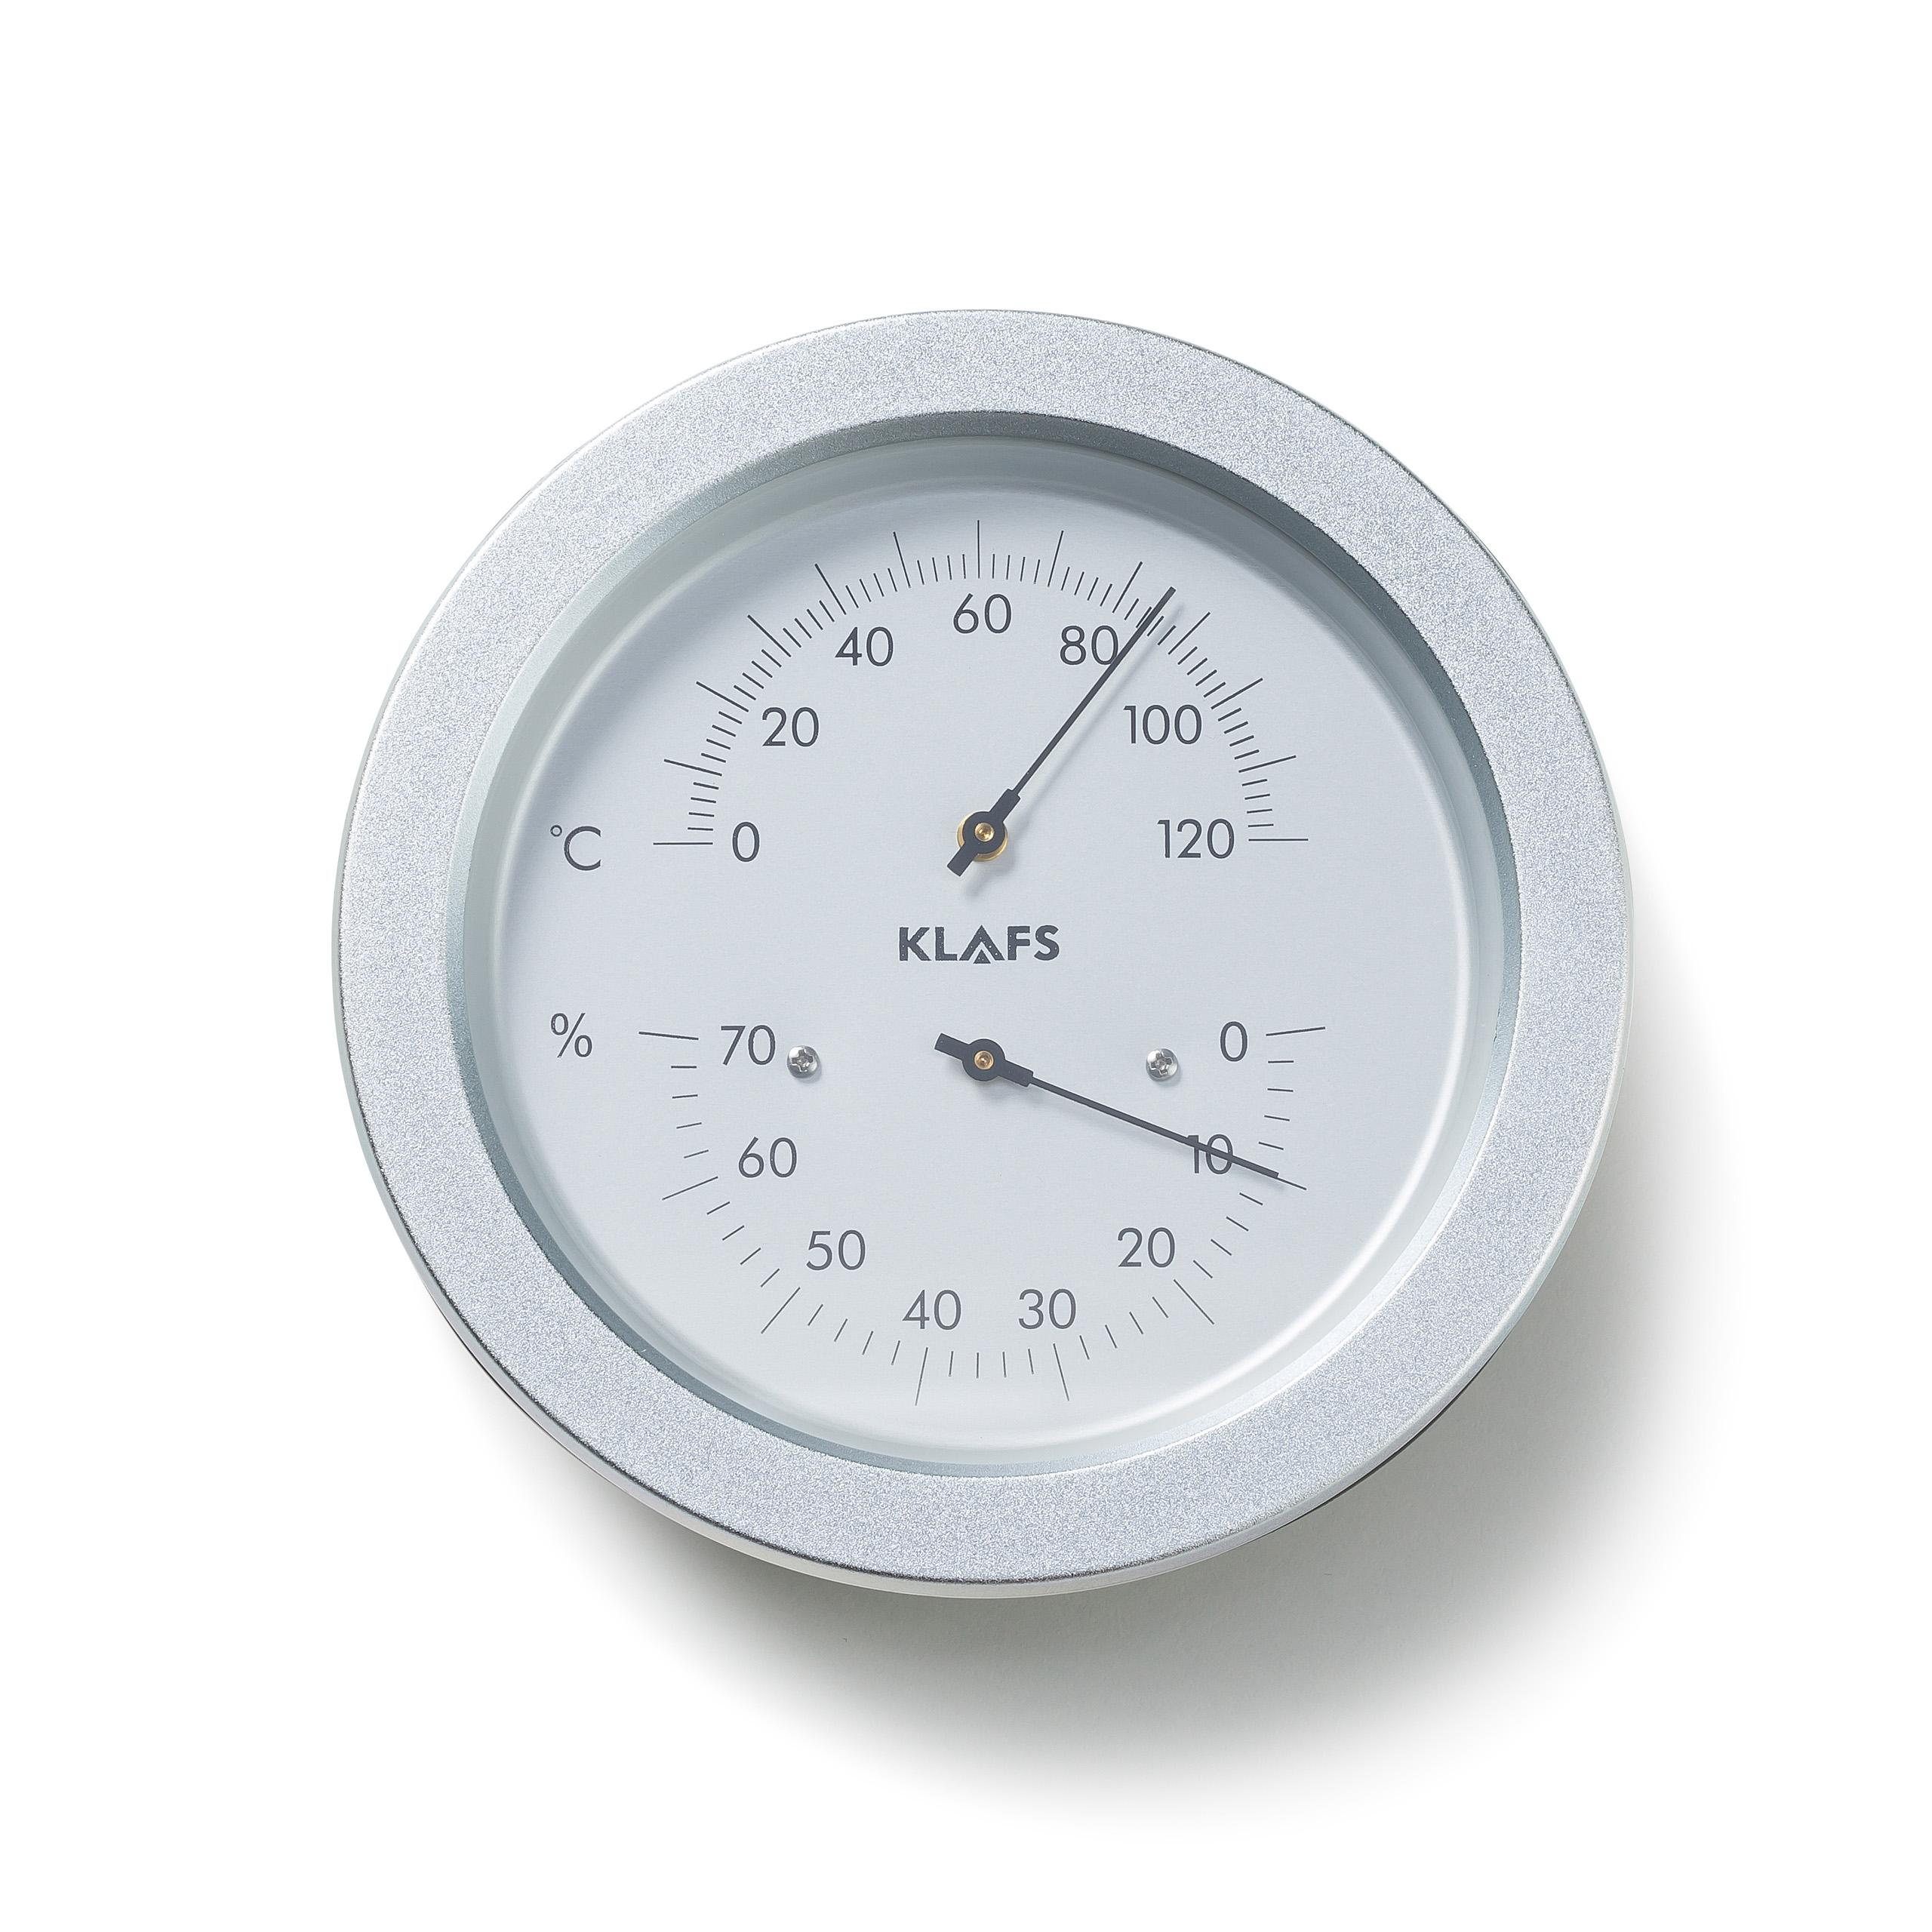 Klimamesser: Thermometer und Hygrometer